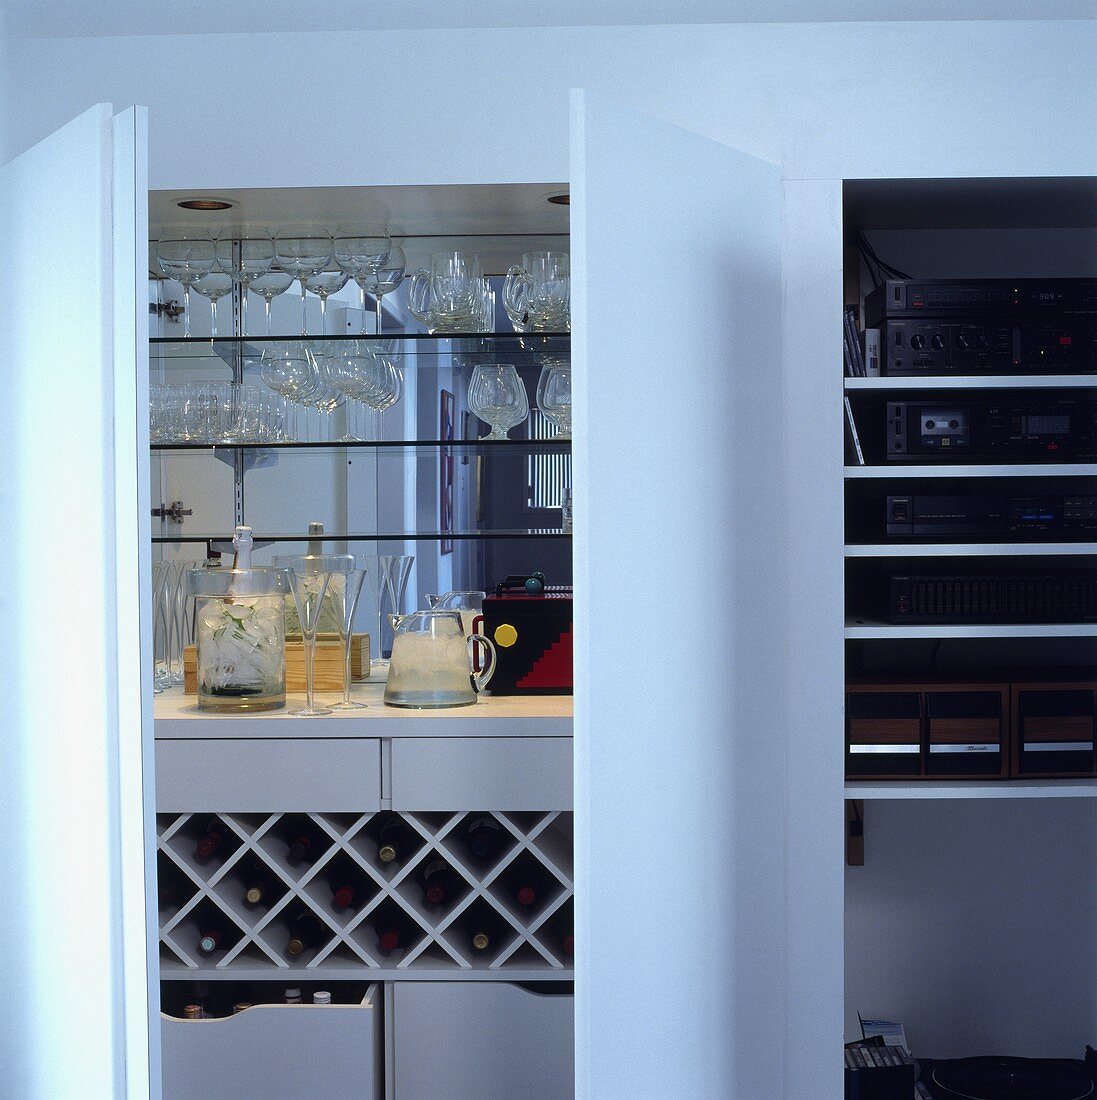 Barutensilien, Gläser und Weinregal in einem Schrank mit weissen Türen